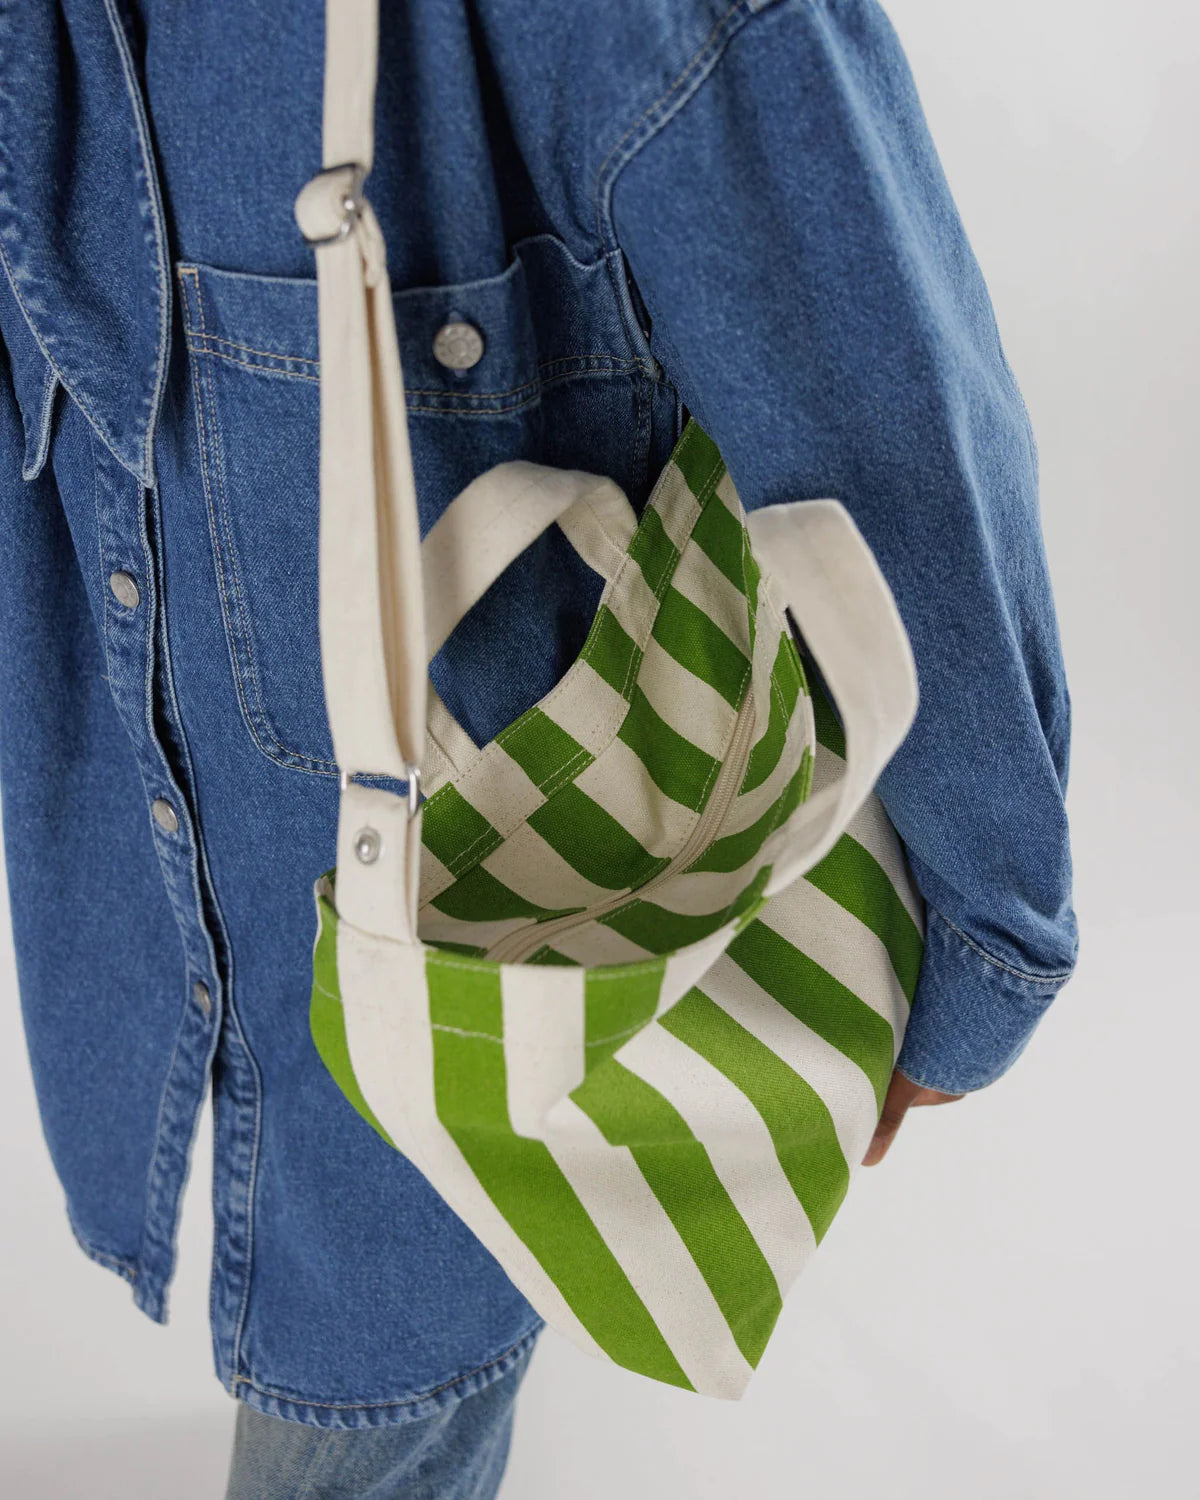 Horizontal Zip Duck Bag-Green Awning Stripe